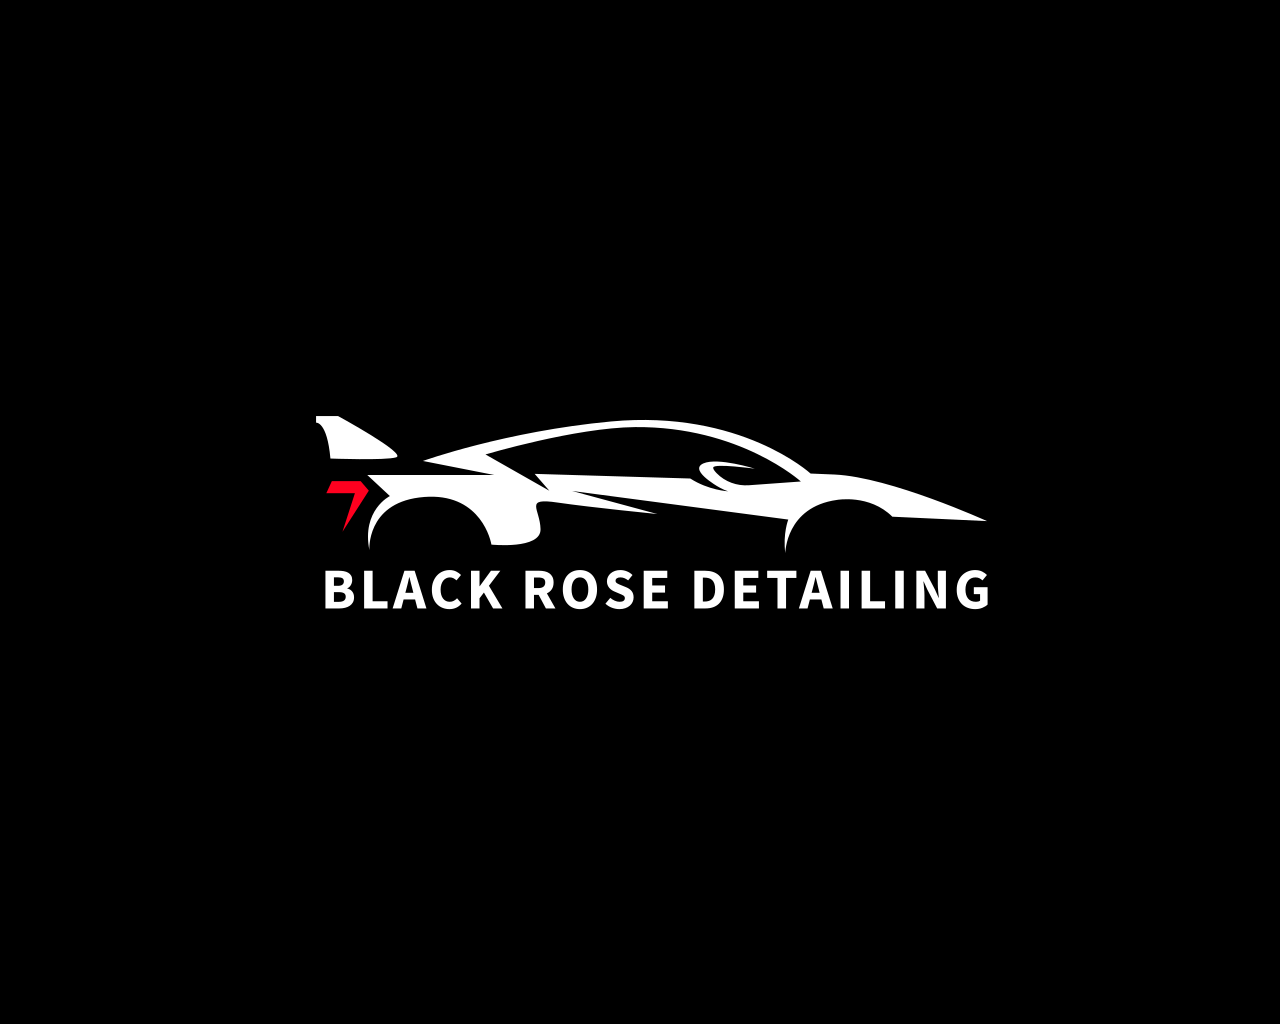 Black Rose Detailing